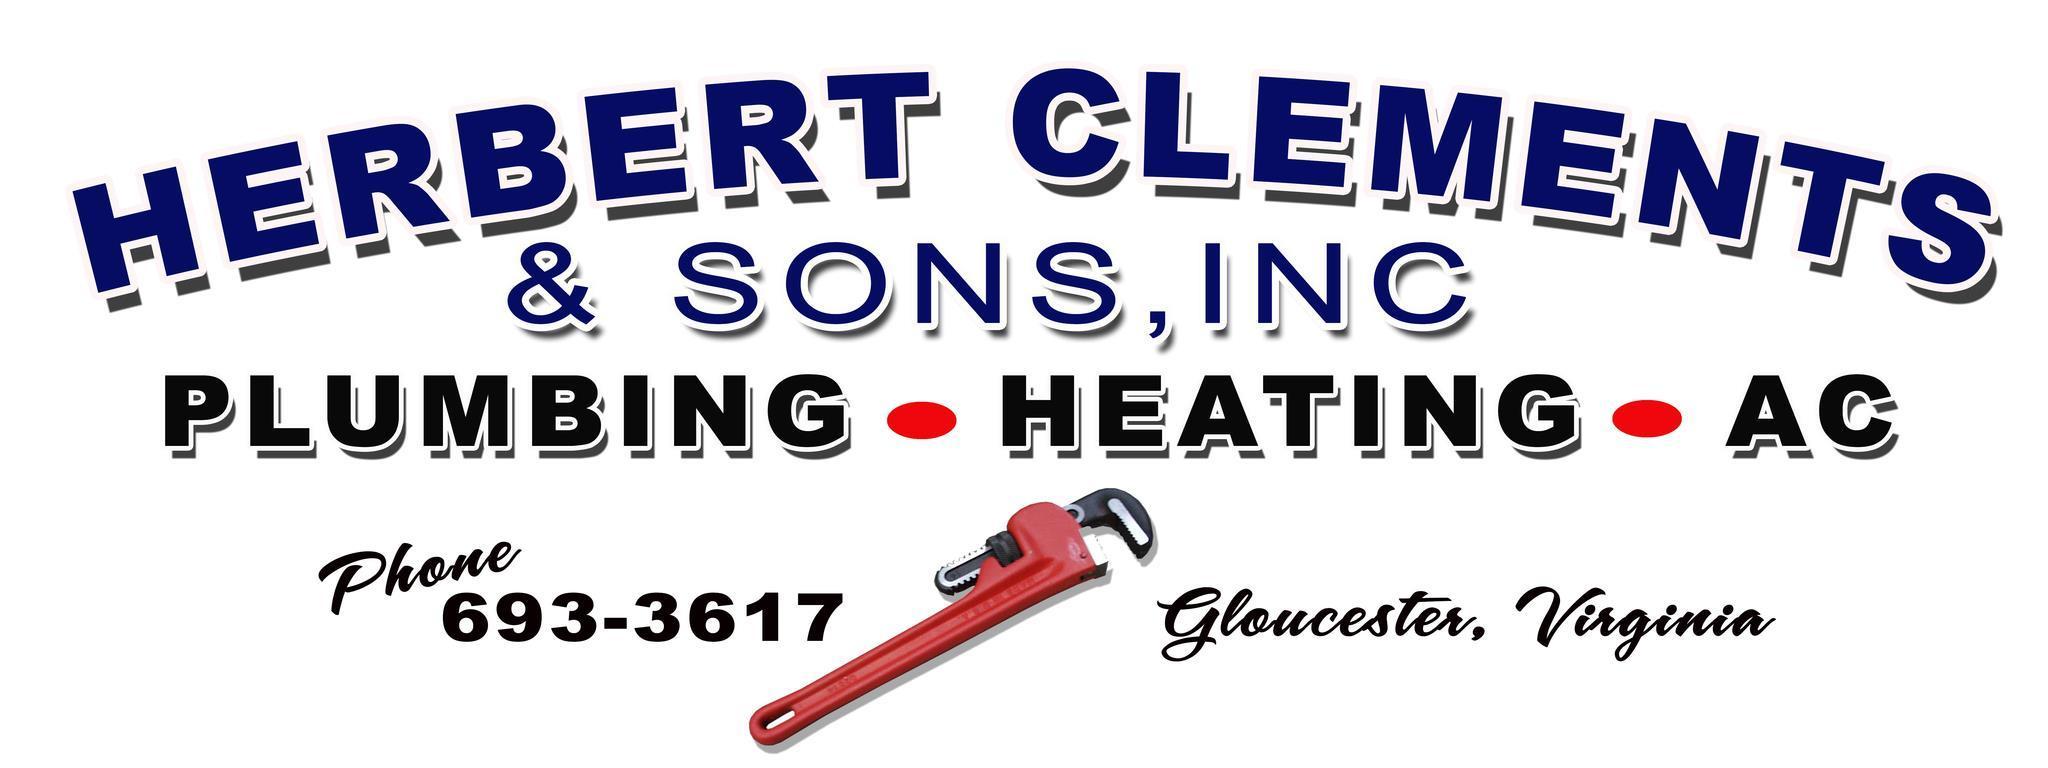 Herbert Clements & Sons, Inc.